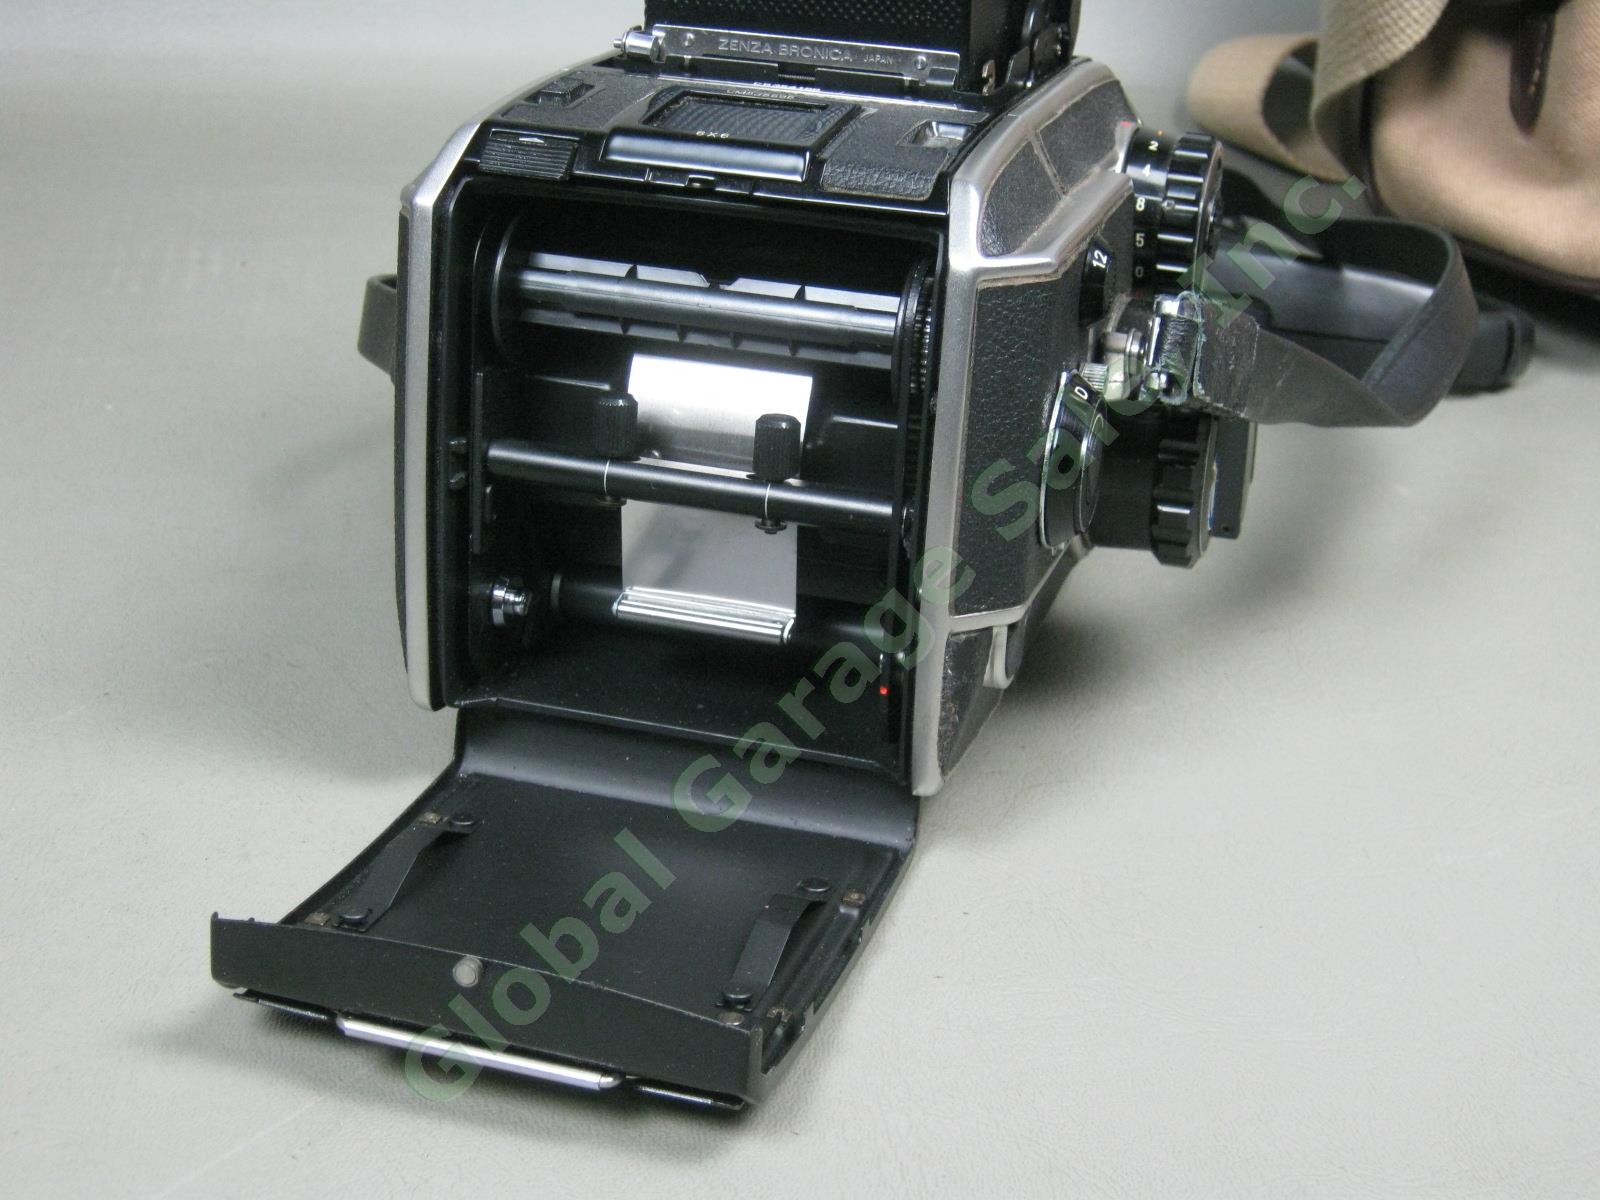 Zenza Bronica EC-TL Camera Nippon Kogaku Nikkor-H 50mm 1:3.5 f/3.5 Lens Bundle 7